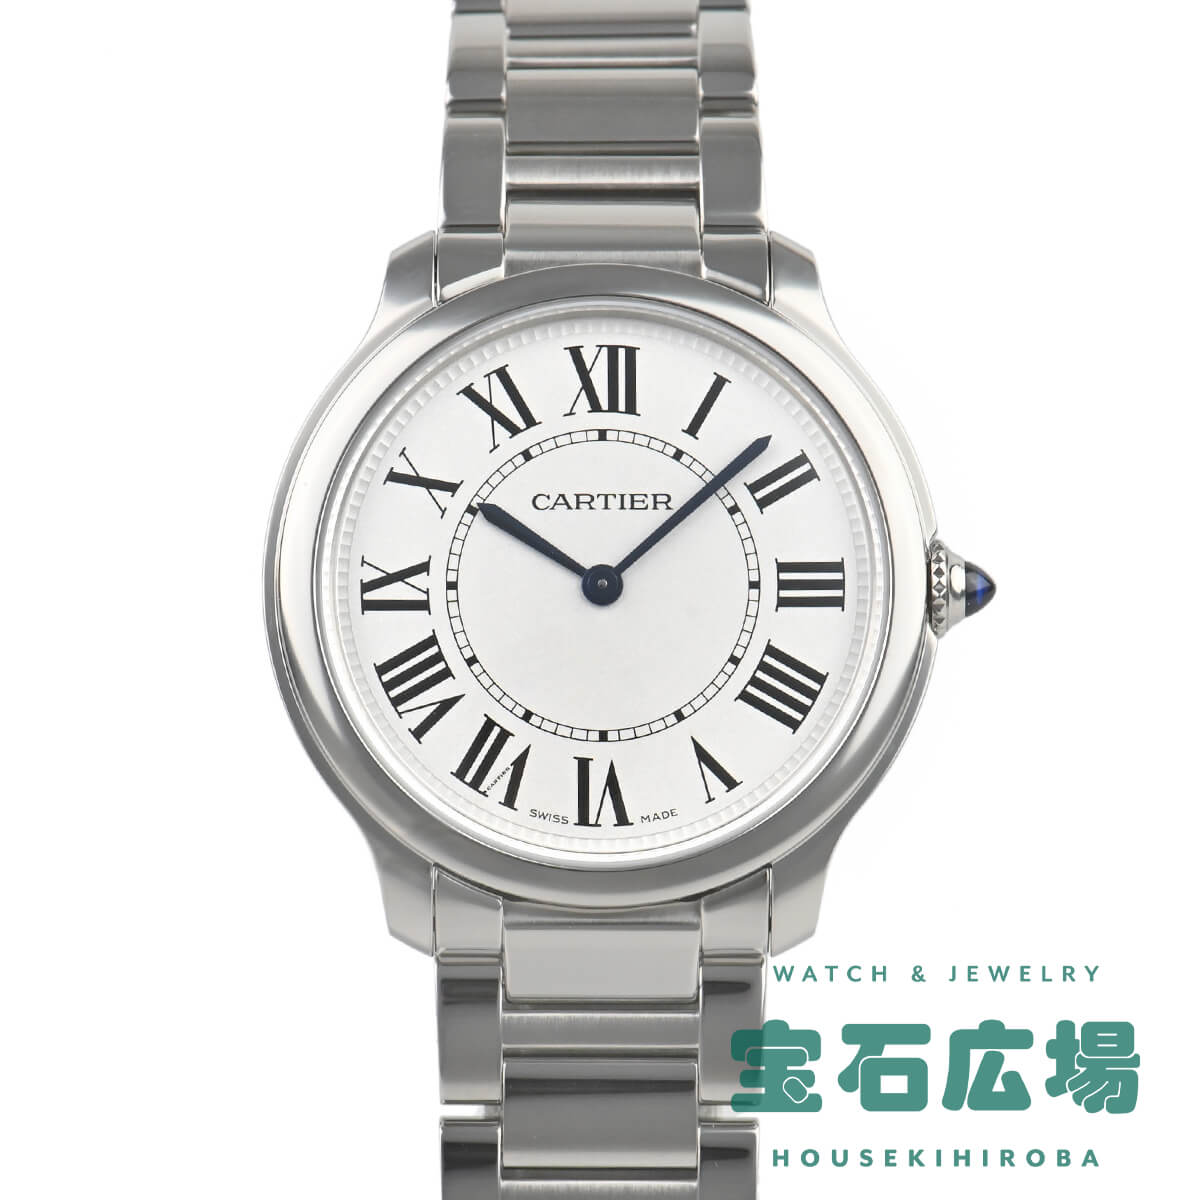 カルティエ Cartier ロンド マスト ドゥ カルティエ 36mm WSRN0034【新品】ユニセックス 腕時計 送料無料